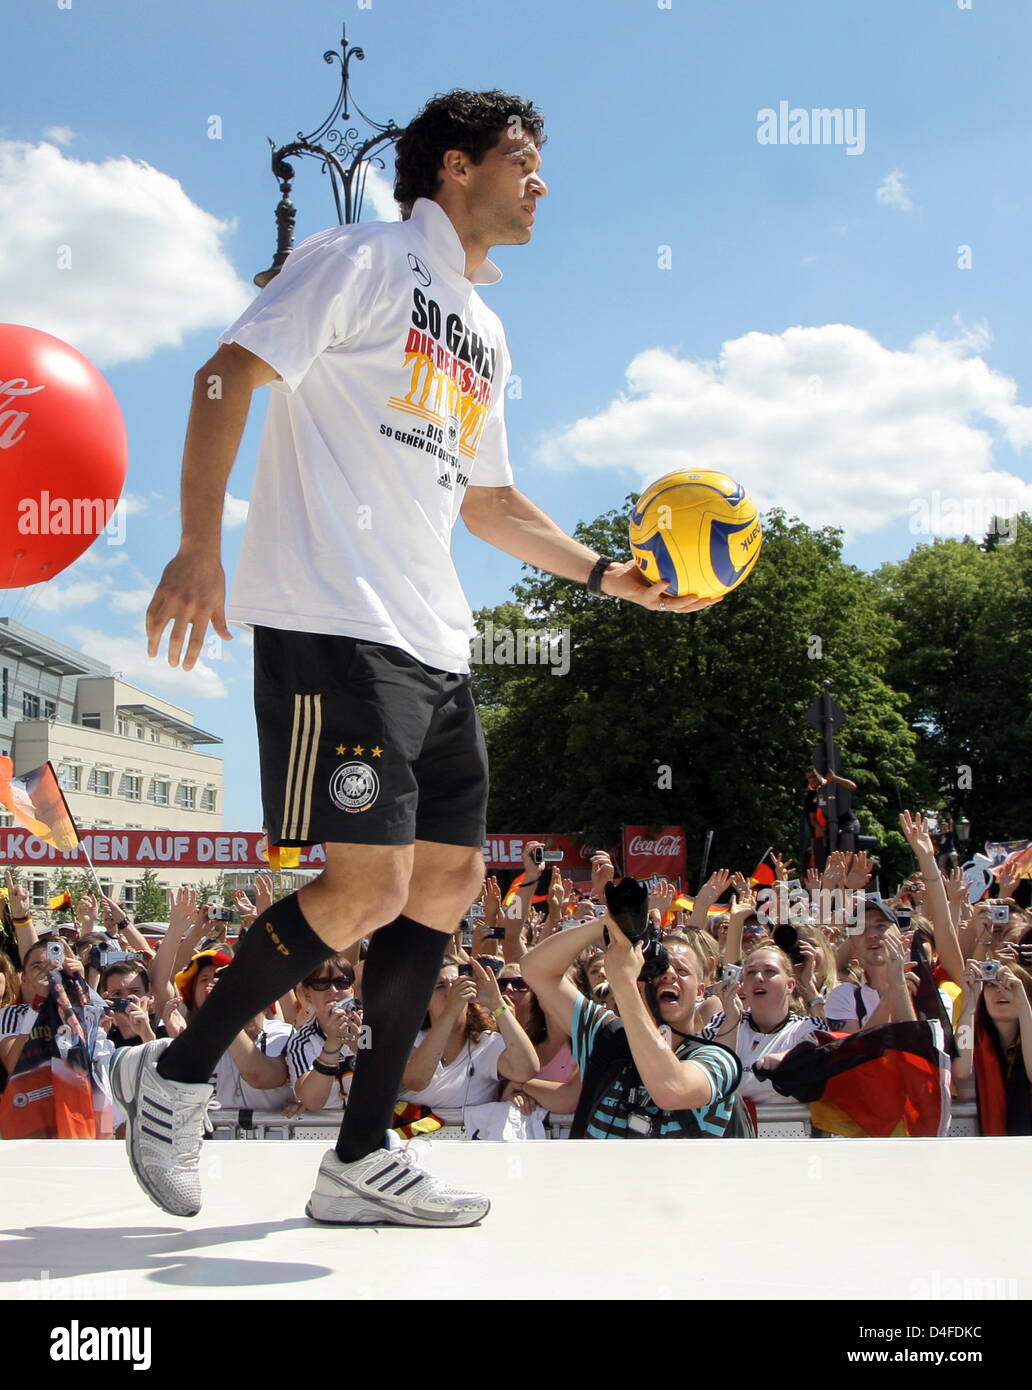 Michael Ballack, Kapitän der deutschen Fußball-Nationalmannschaft, feiert am Montag (30.06.2008) auf der Fanmeile in Berlin und schießt einen Ball in das Publikum. Am Abend zuvor unterlag Deutschland im Finale der Europameisterschaft dem spanischen Team mit 0:1. Foto: Peer Grimm +++###dpa###+++ Stock Photo